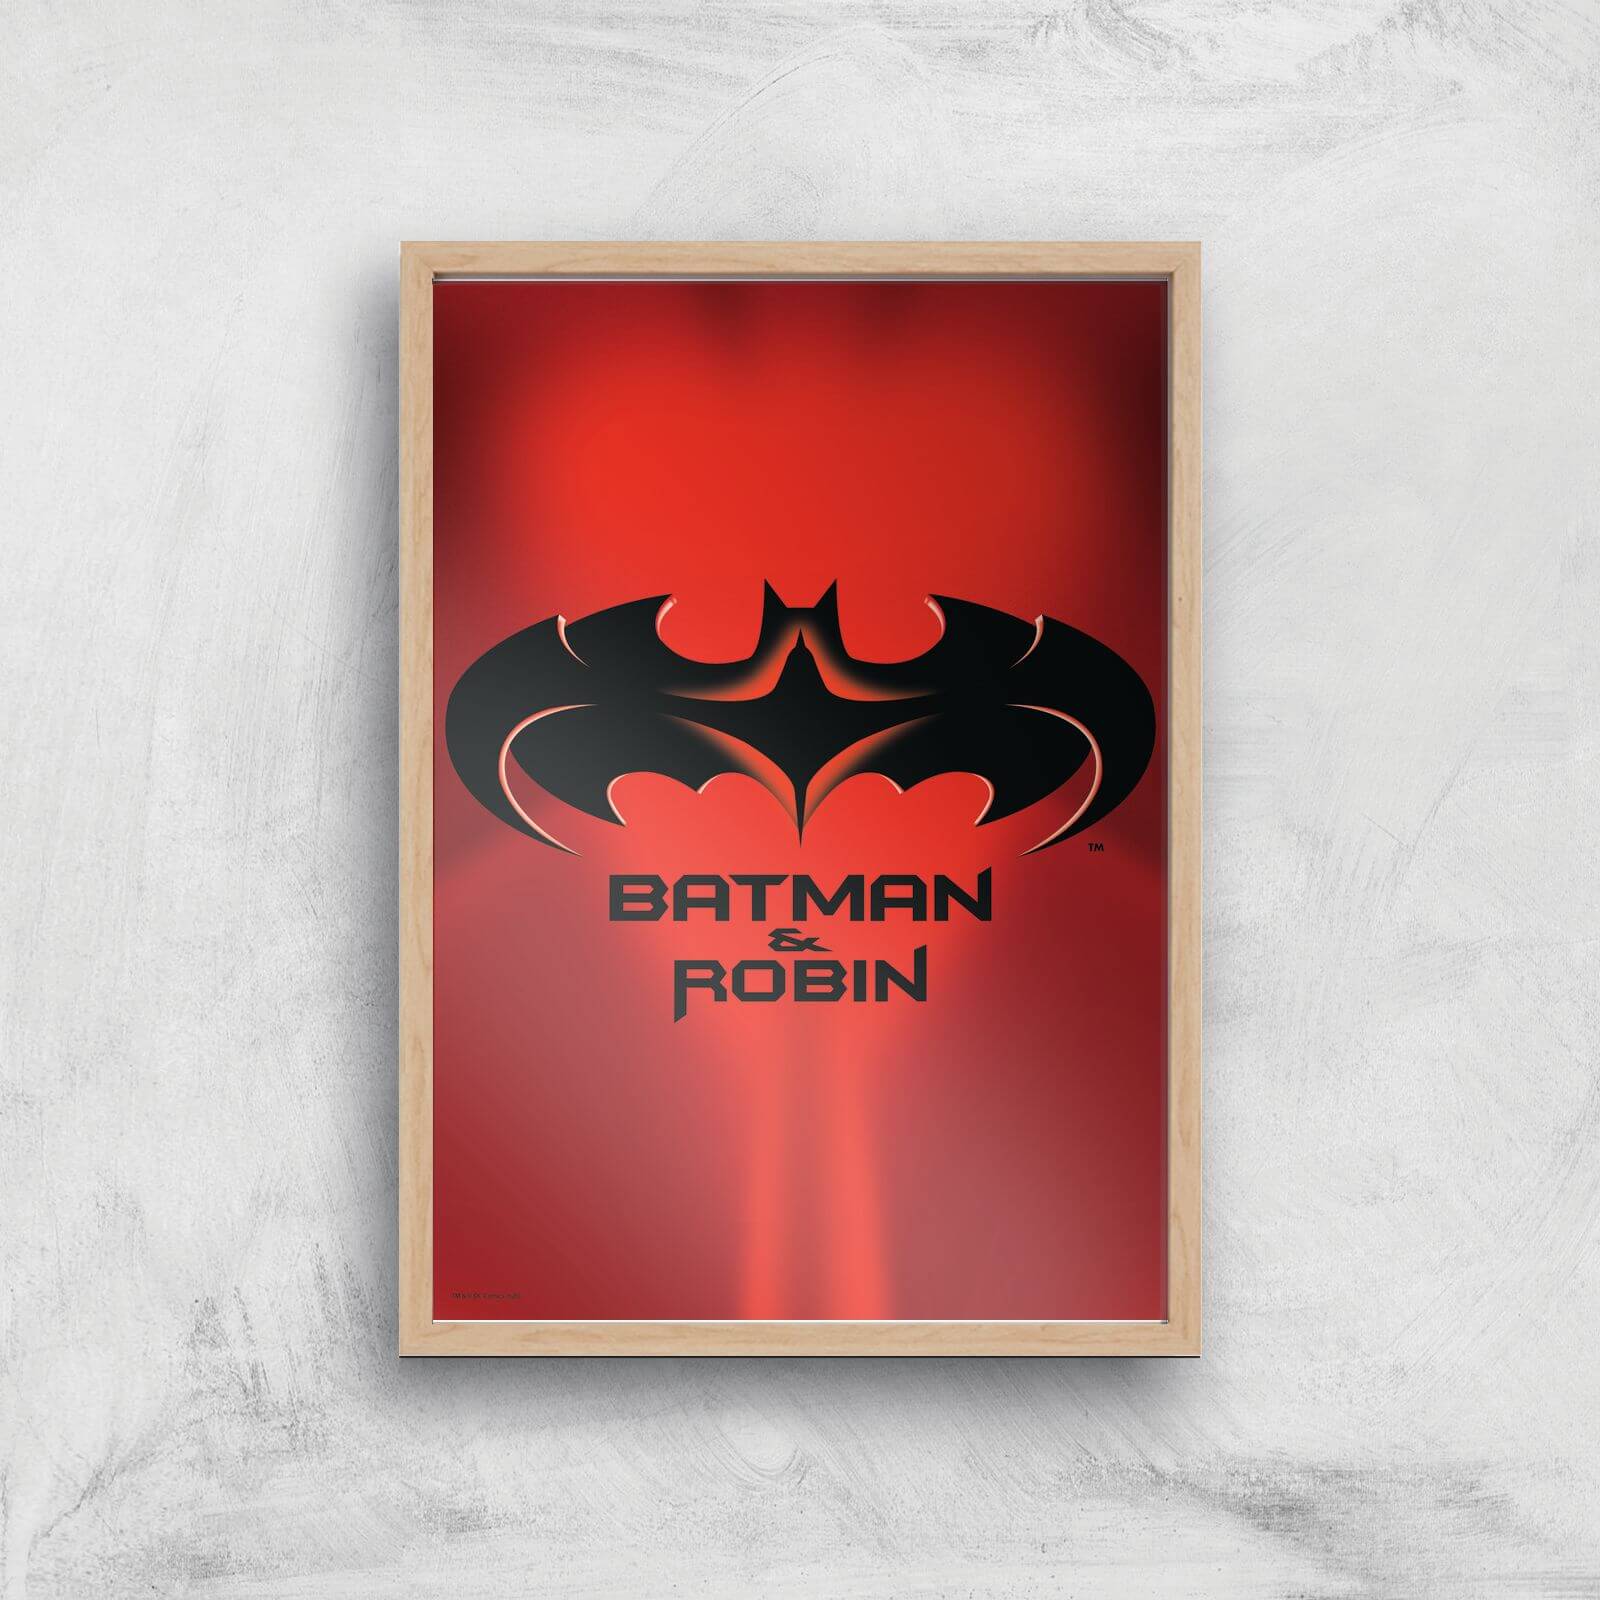 Batman & Robin Giclee Art Print - A4 - Wooden Frame